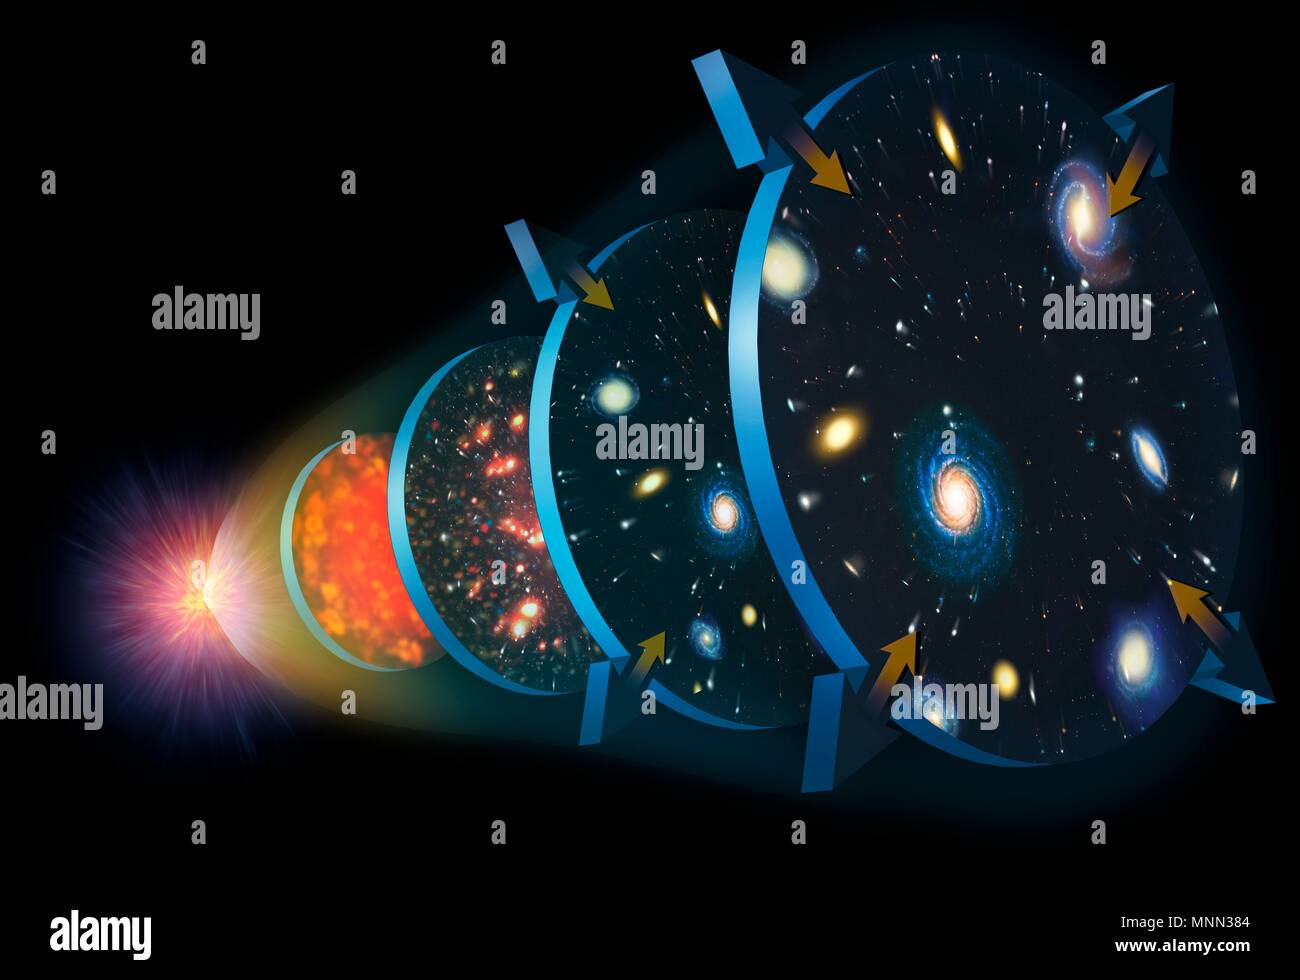 Illustrazione dell'espansione dell'Universo. Il Cosmo ha iniziato a 13,7 miliardi di anni fa in un evento doppiato il Big Bang (sinistra). Immediatamente è iniziata l'espansione e raffreddamento (fase 1). Infine, l'universo divenne trasparente alla radiazione e la prima questione è stata in grado di formare grumi. La sua espansione rallentata a circa 10 miliardi di anni fa (fase 2). Nella fase 3, 5 miliardi di anni fa, l'universo era pieno di stelle e galassie e la sua espansione ha cominciato ad aumentare di nuovo la velocità a causa della misteriosa energia oscura che pervade l'universo. Foto Stock